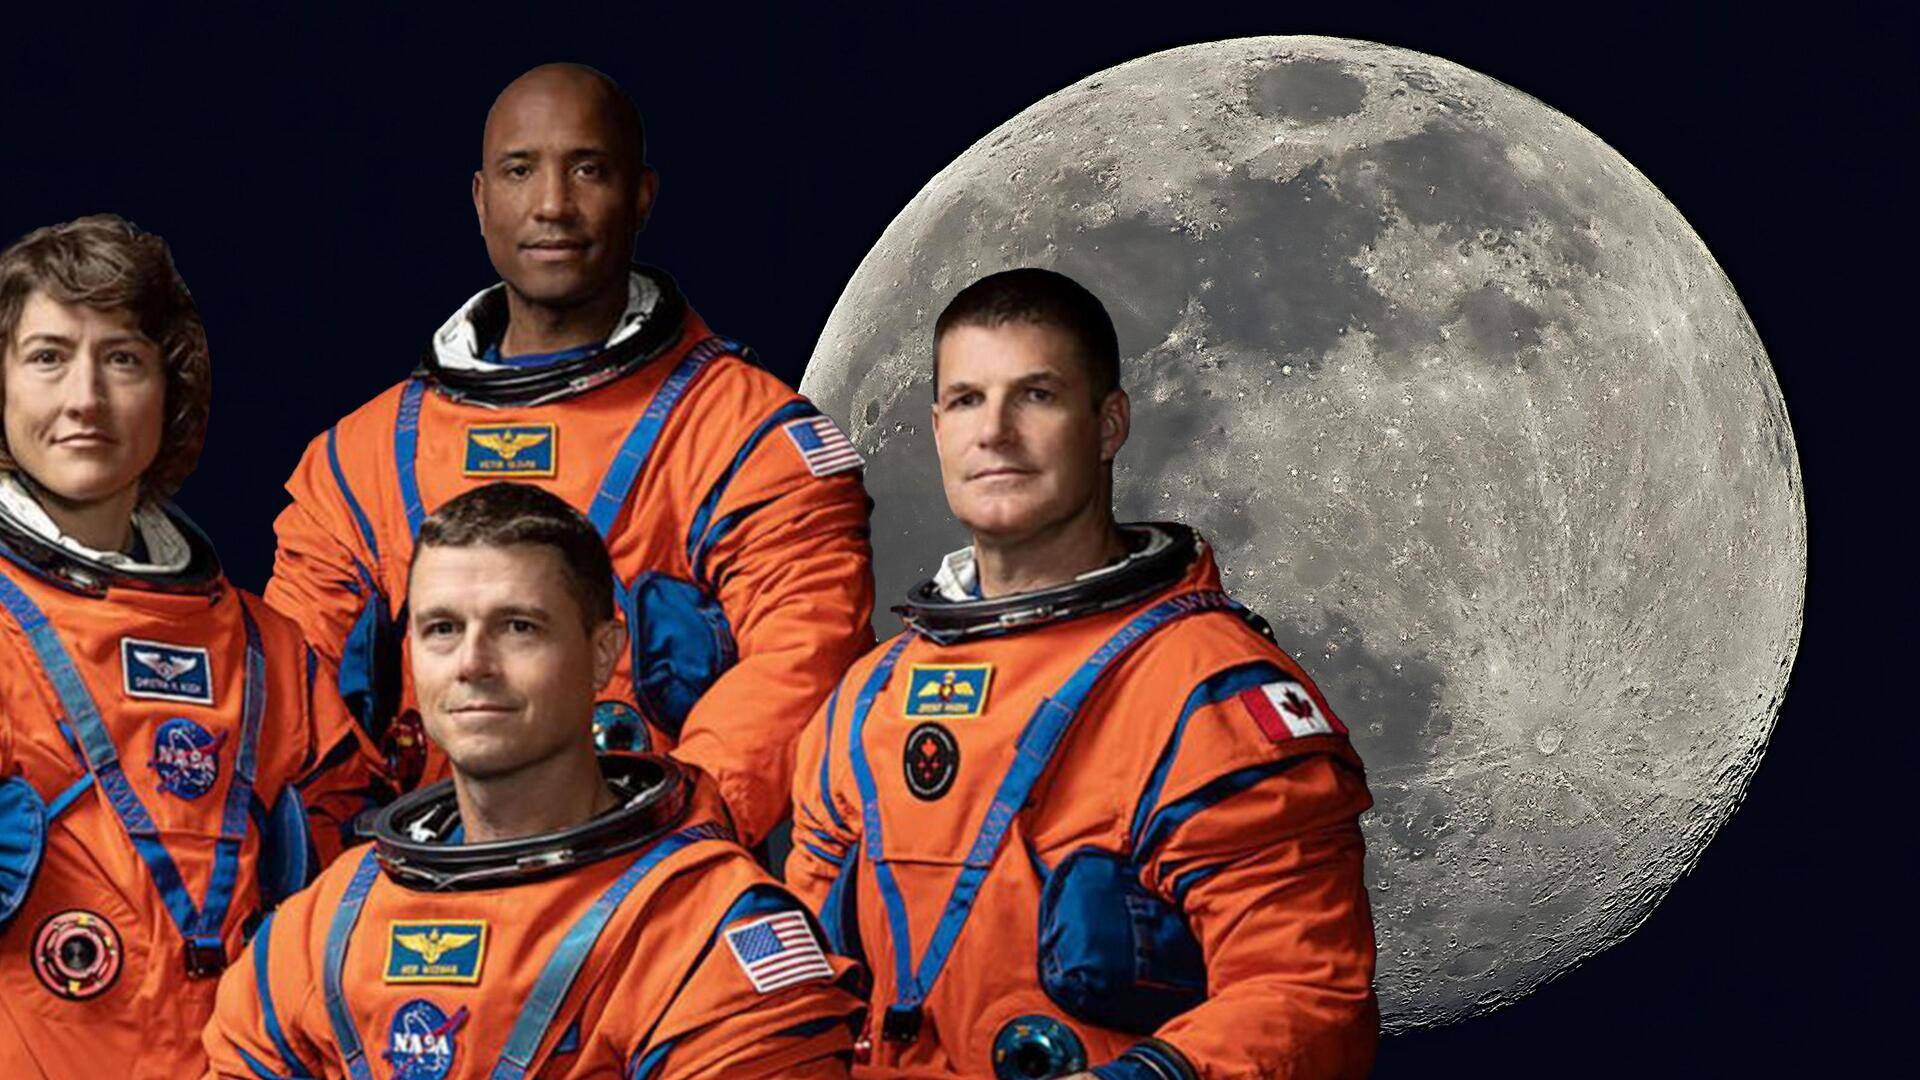 नासा के आर्टिमिस 2 मिशन के चारों अंतरिक्ष यात्री कौन हैं?